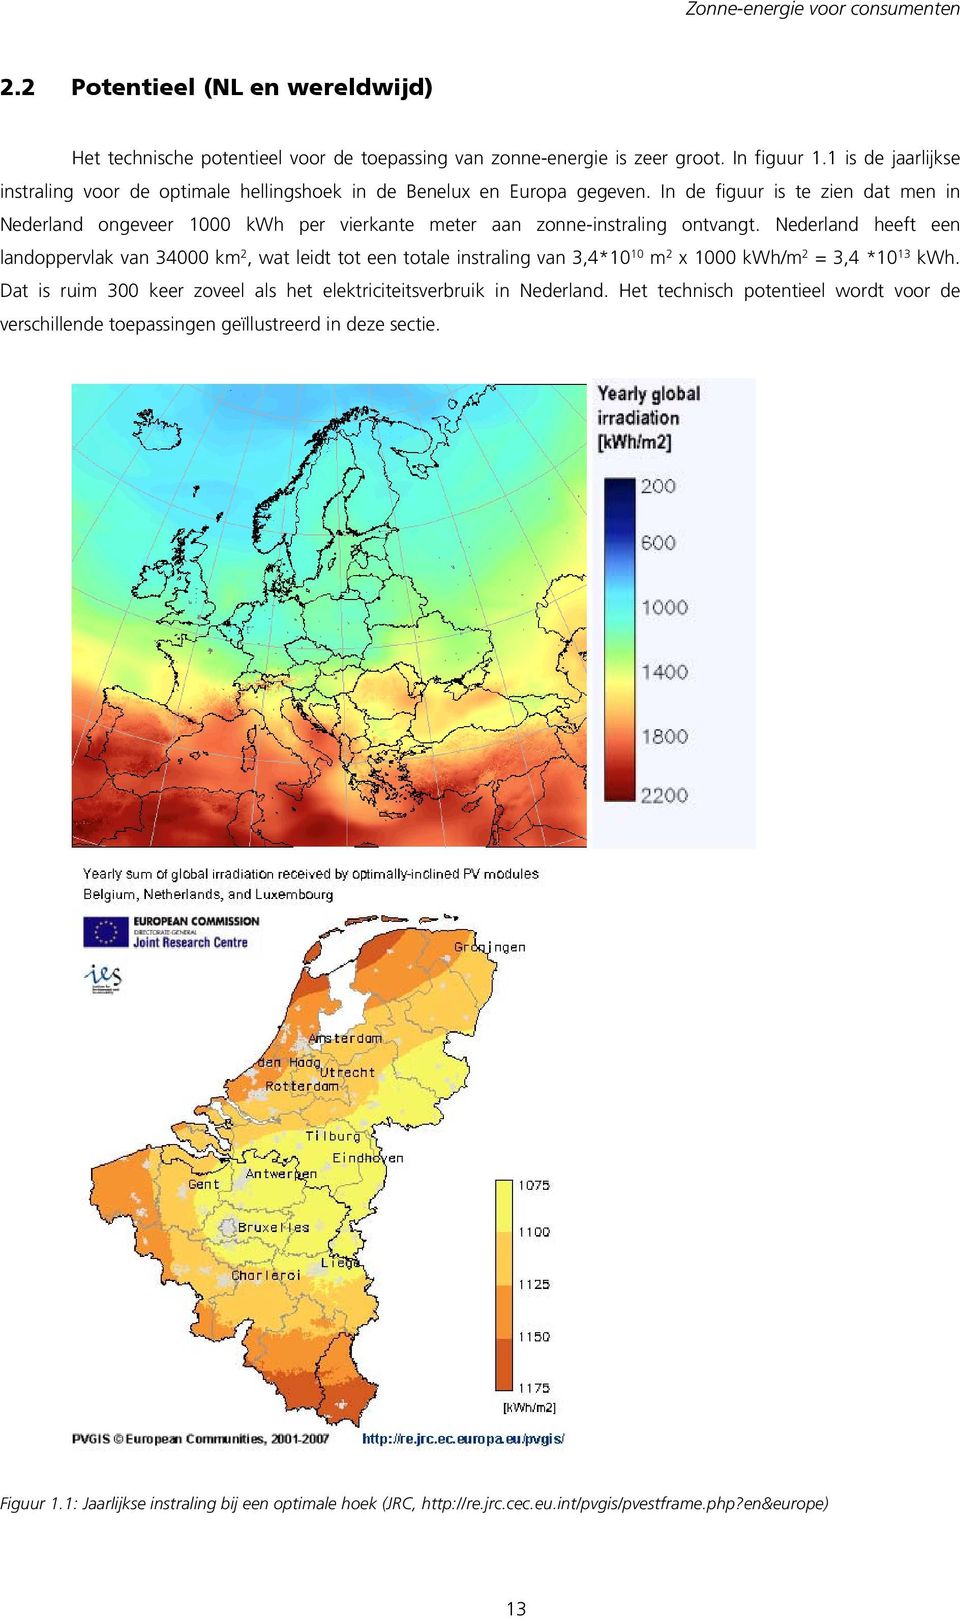 In de figuur is te zien dat men in Nederland ongeveer 1000 kwh per vierkante meter aan zonne-instraling ontvangt.